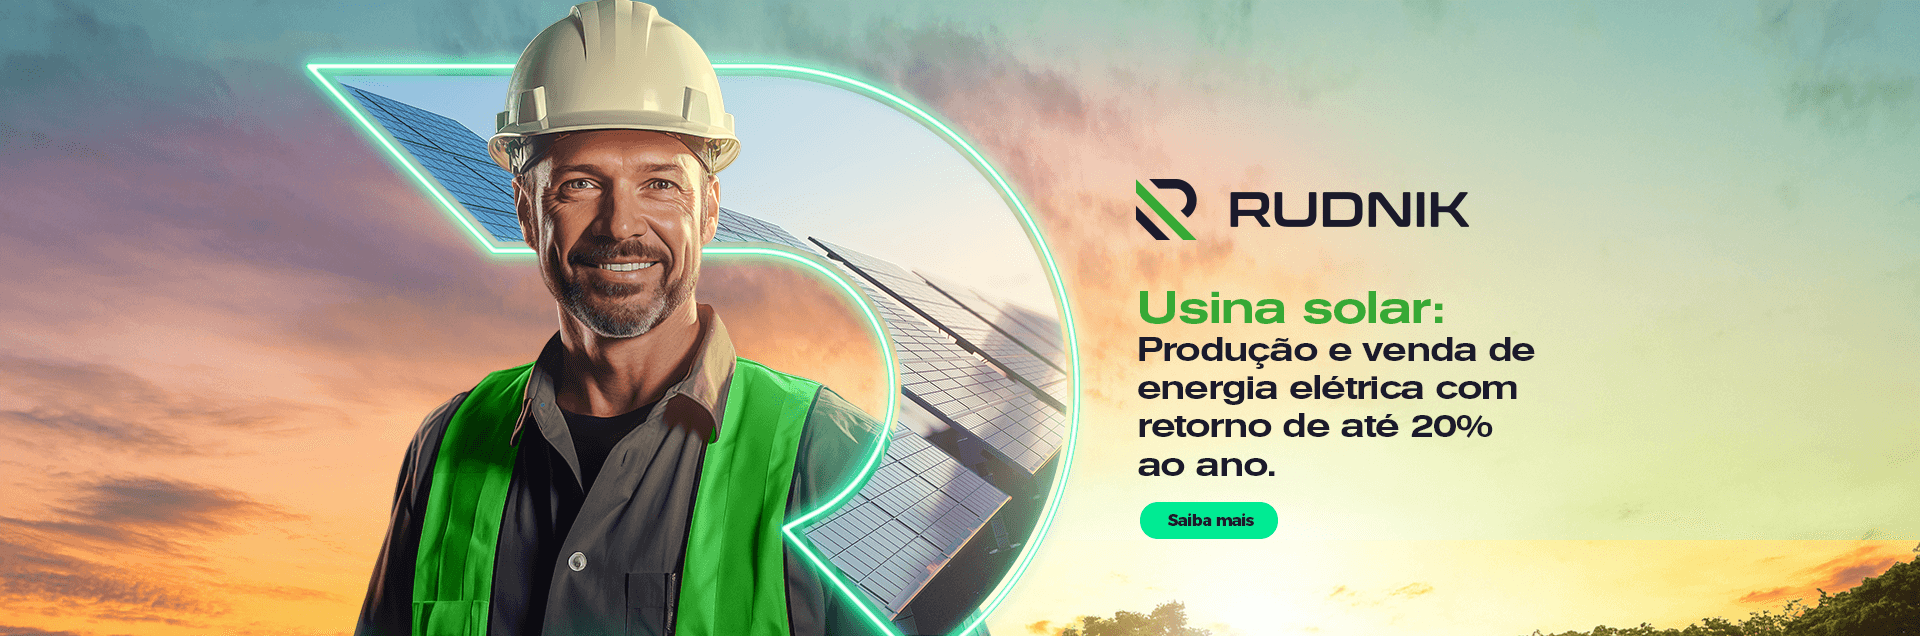 Rudnik - energia solar: produção e venda com retorno de até 20% ao ano